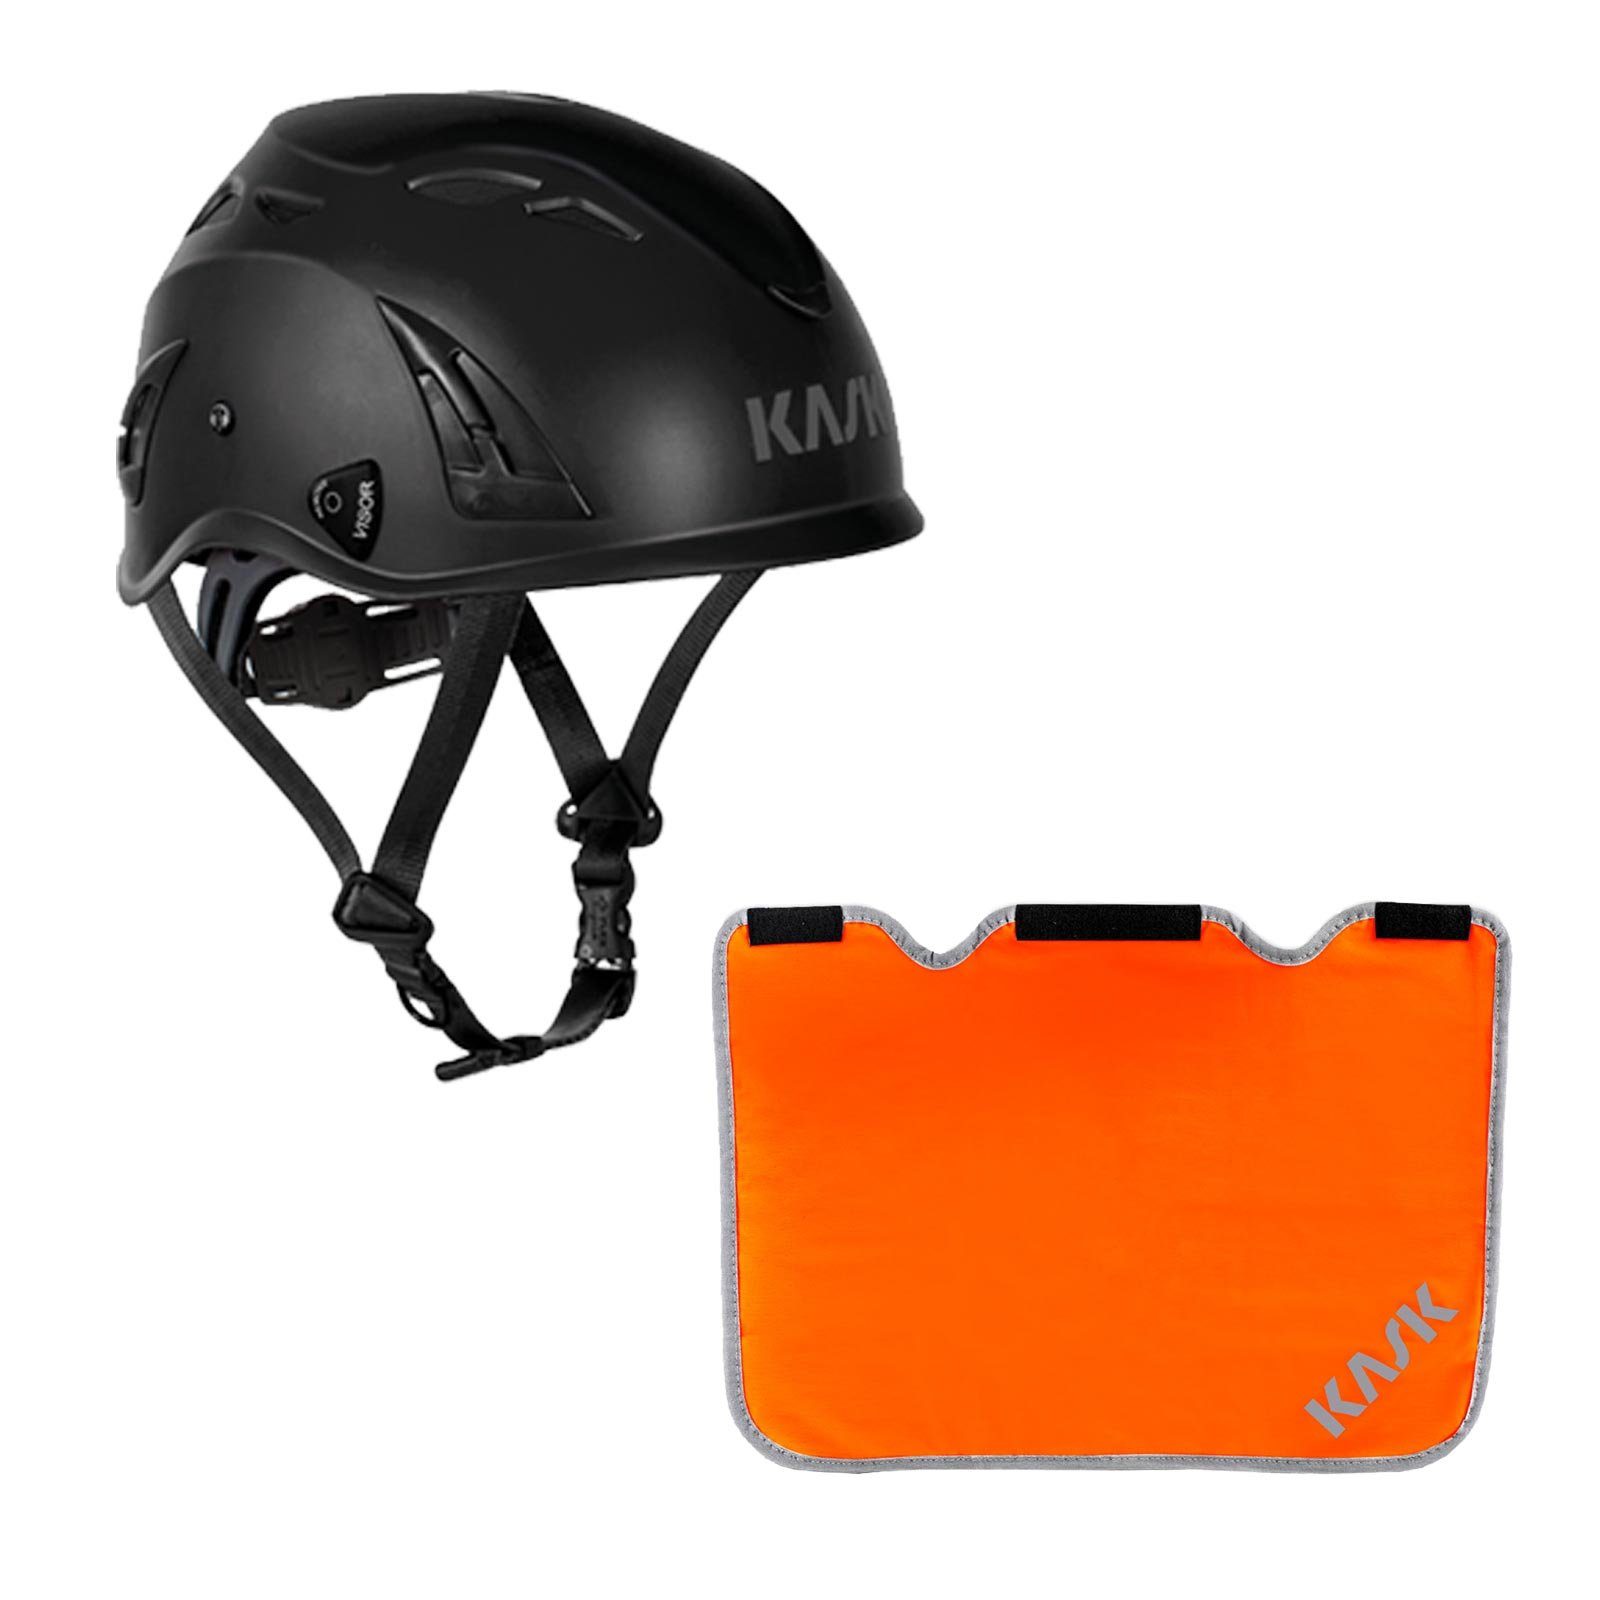 Kask Schutzhelm Plasma AQ Arbeitsschutzhelm + Nackenschutz orange mit BG Bau Förderung schwarz